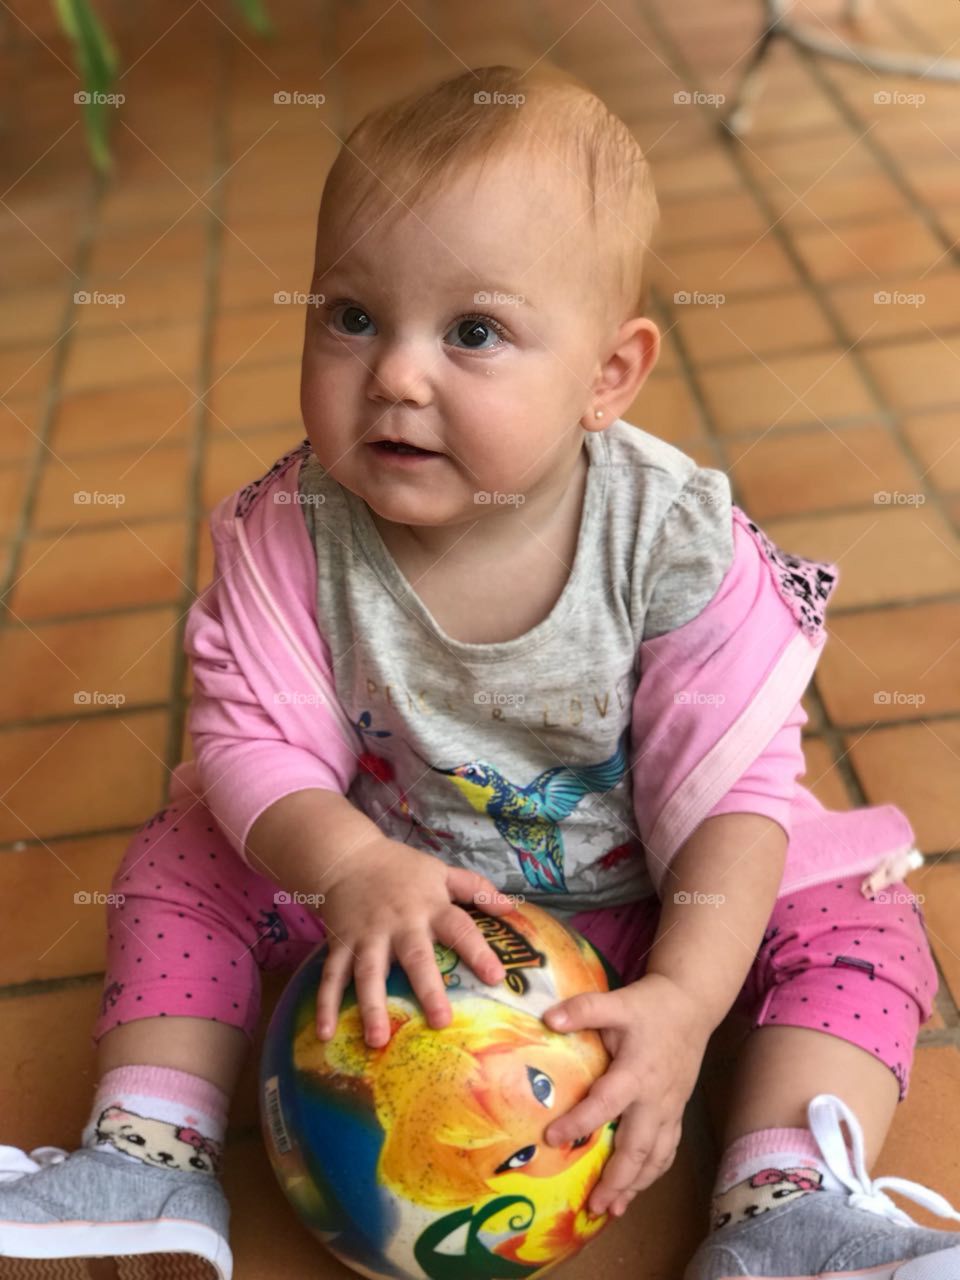 Minha pequena Estela com a bola na mão para brincar. Como a vida é generosa conosco!